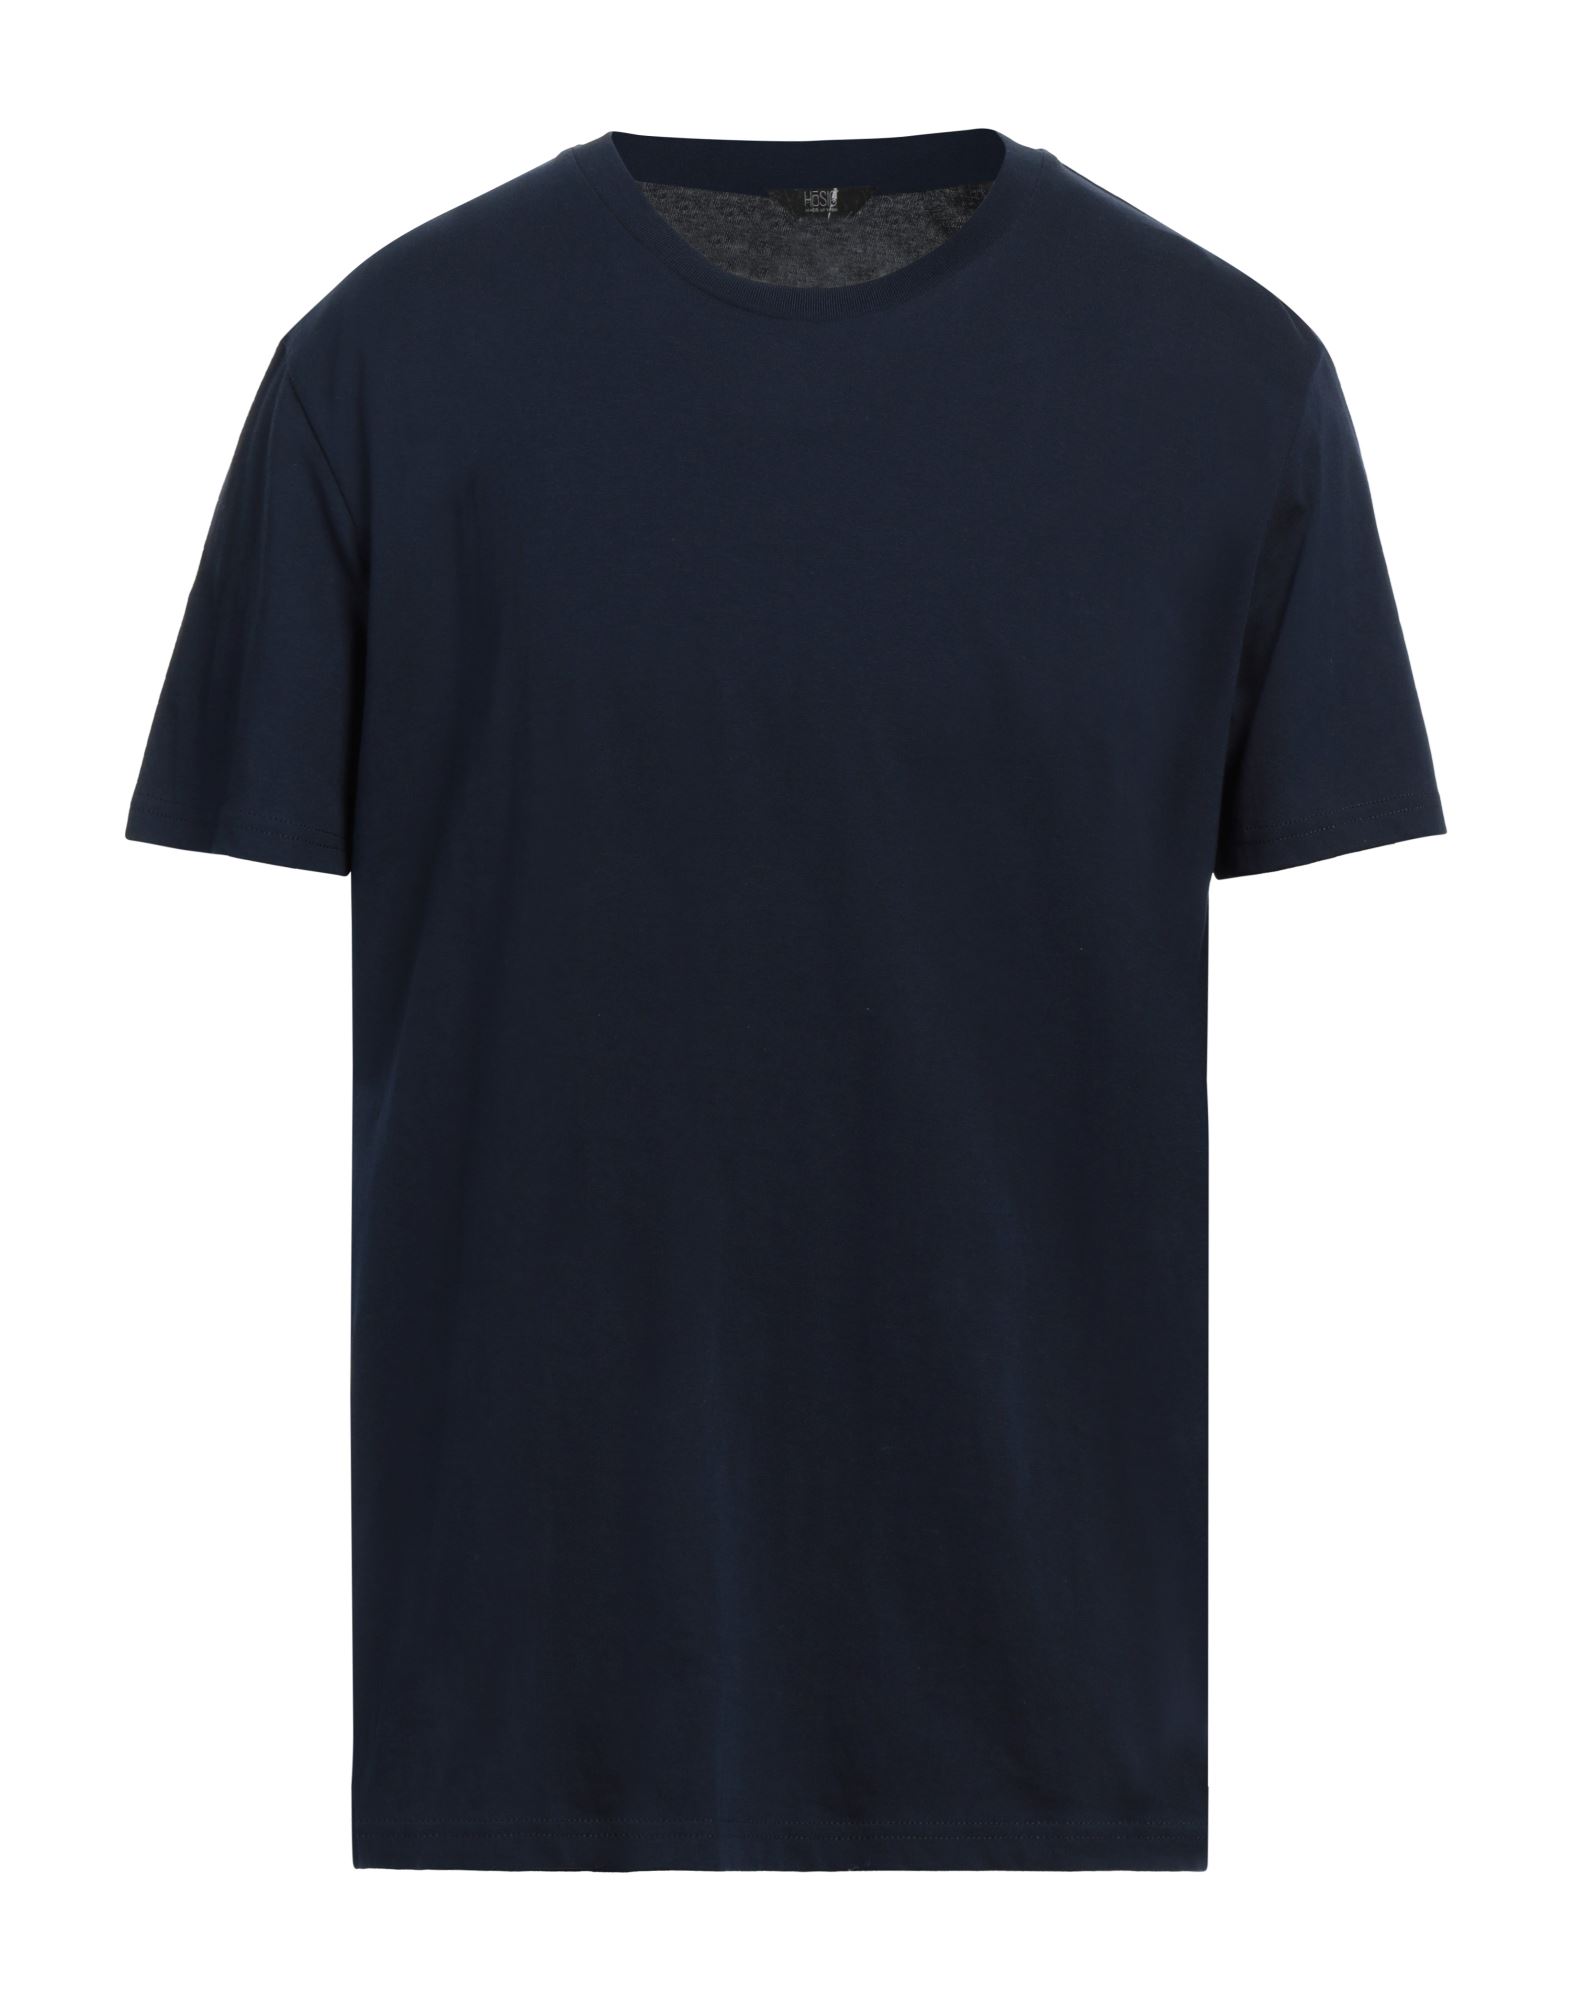 HōSIO T-shirts Herren Nachtblau von HōSIO